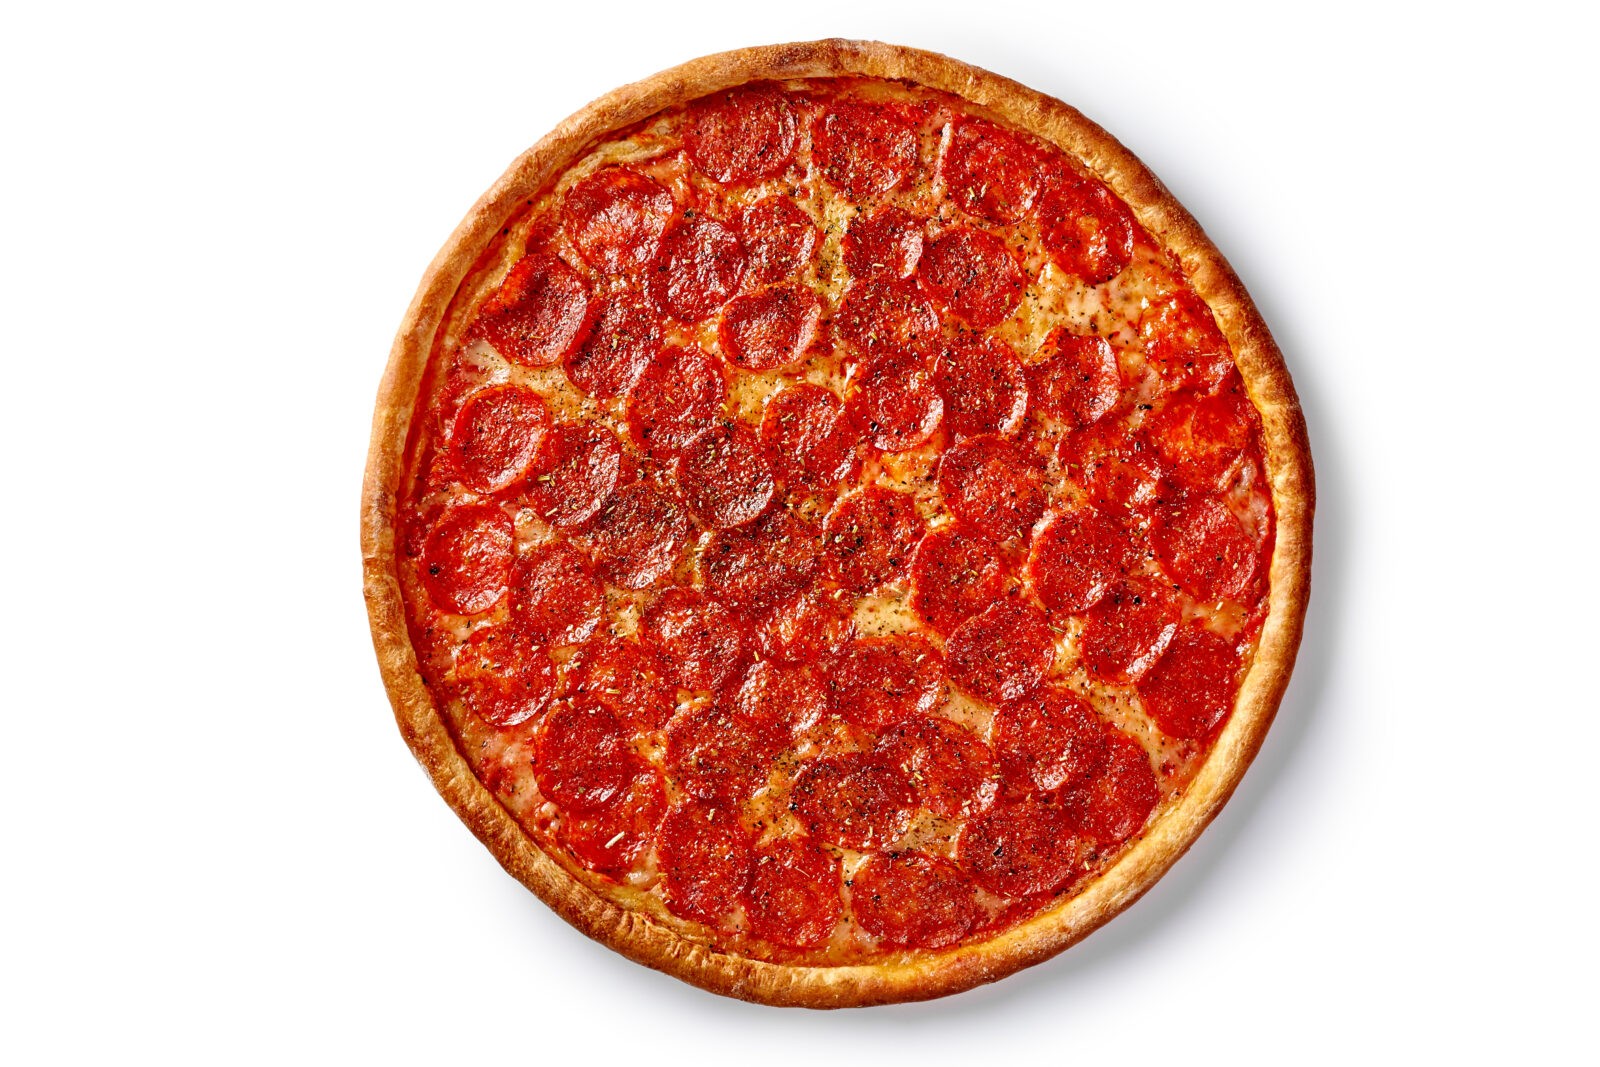 технологическая карта для пиццы пепперони фото 83